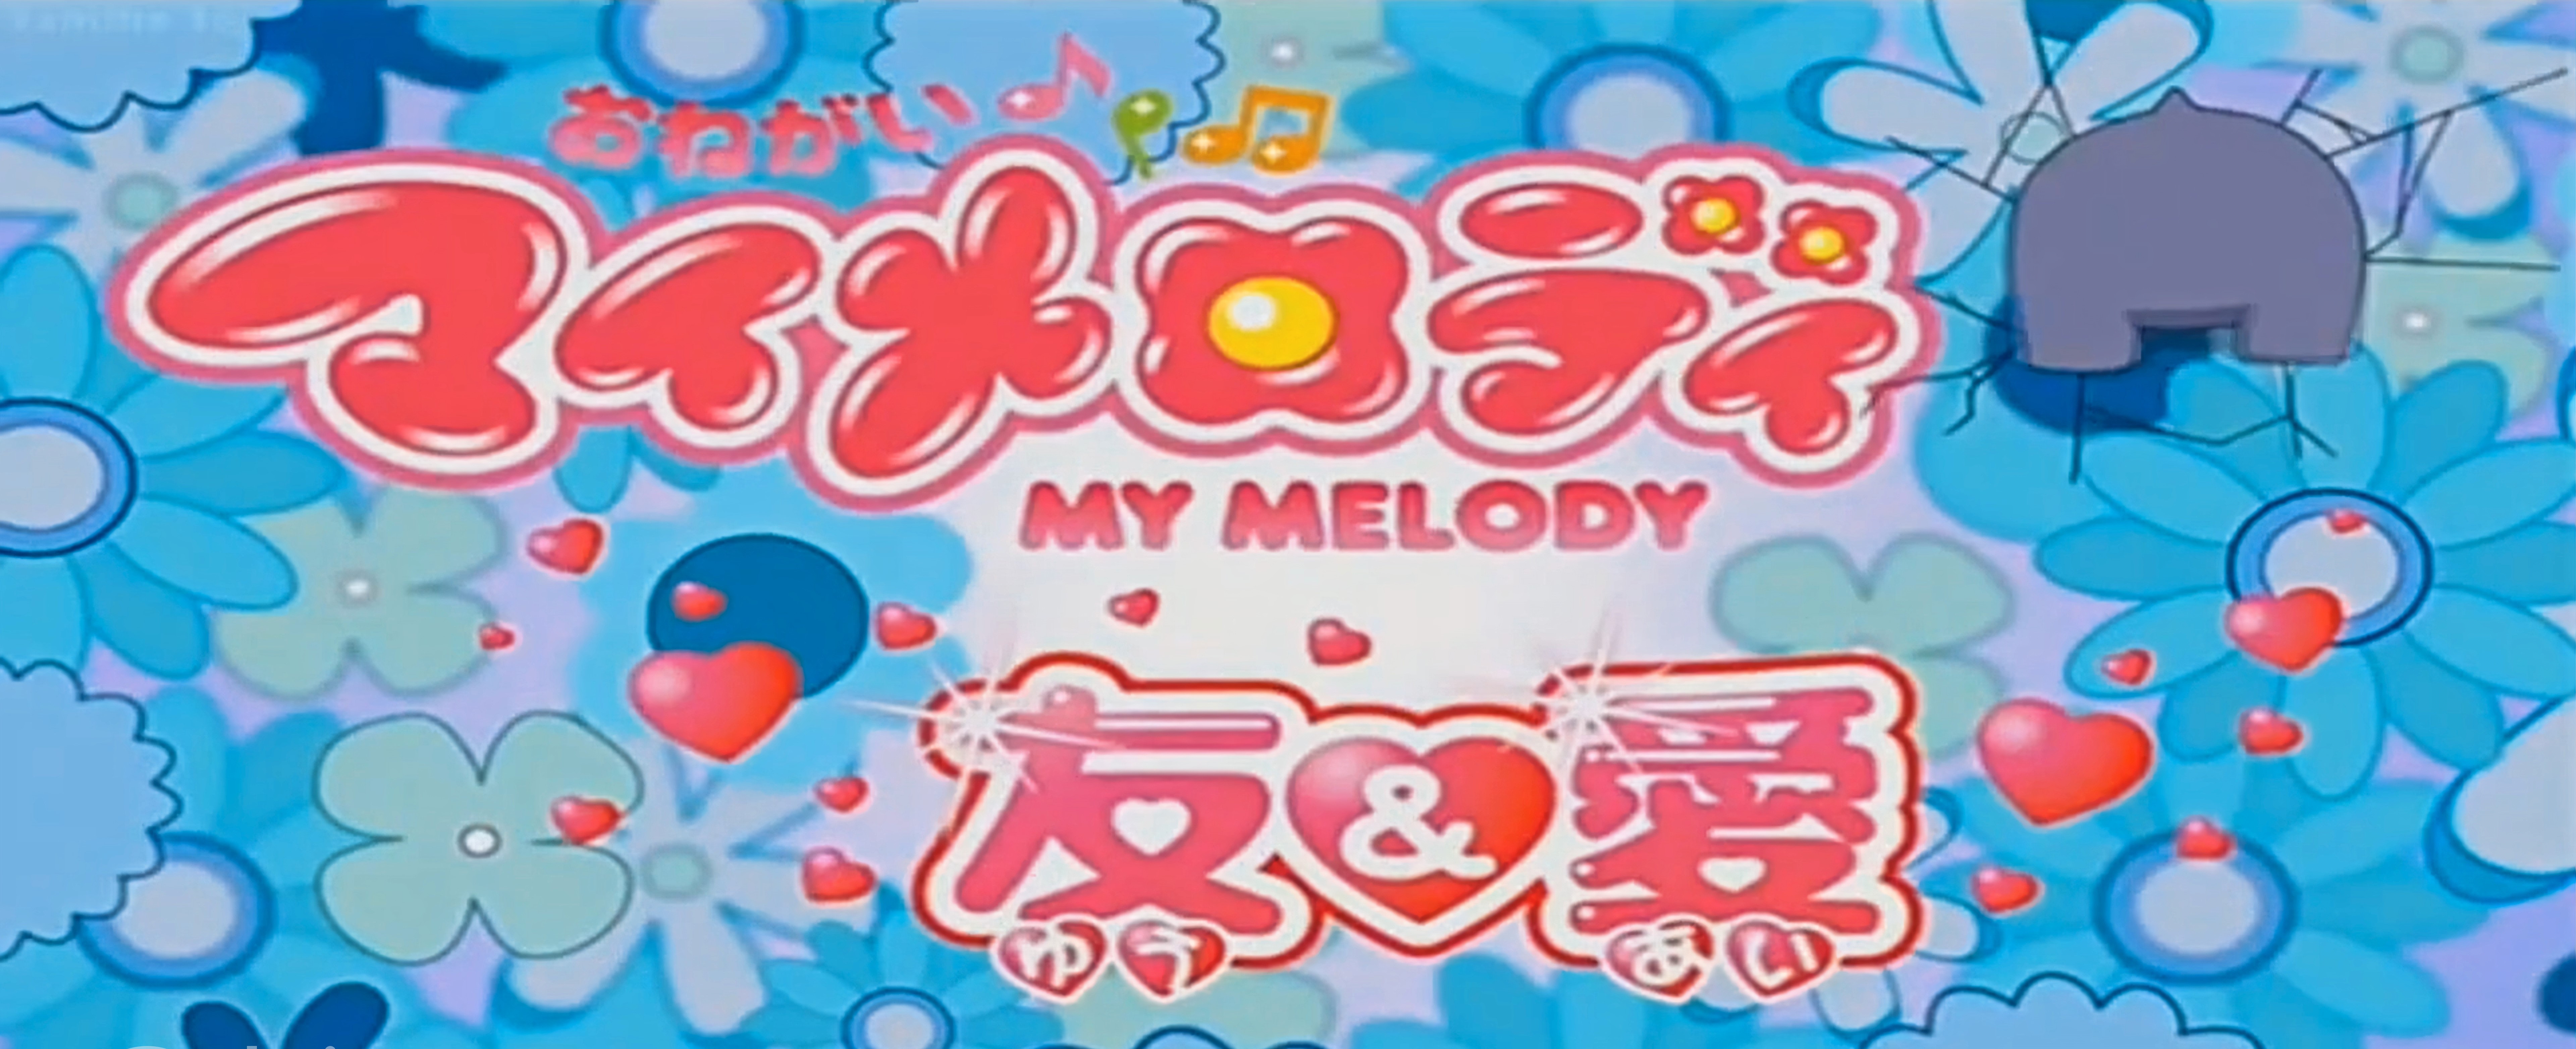 Onegai My Melody: Yuu & Ai